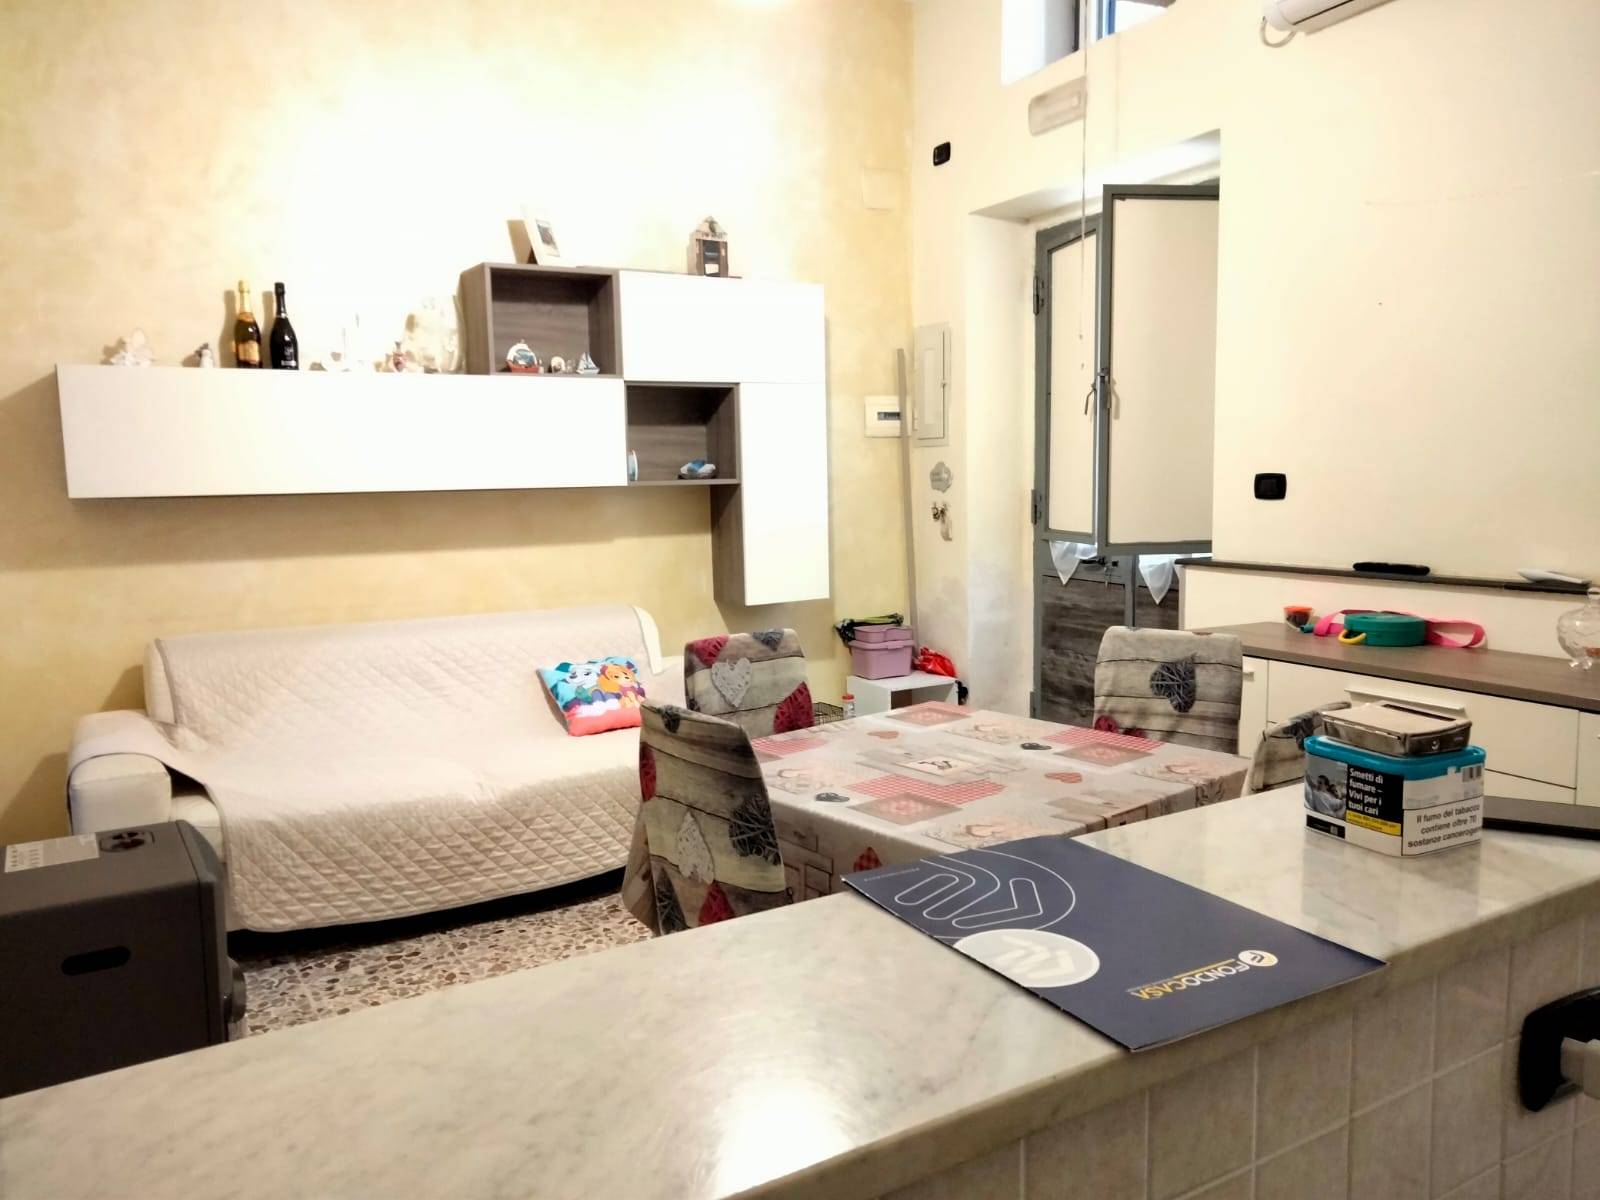 Appartamento in vendita a Brusciano, 2 locali, prezzo € 65.000 | PortaleAgenzieImmobiliari.it